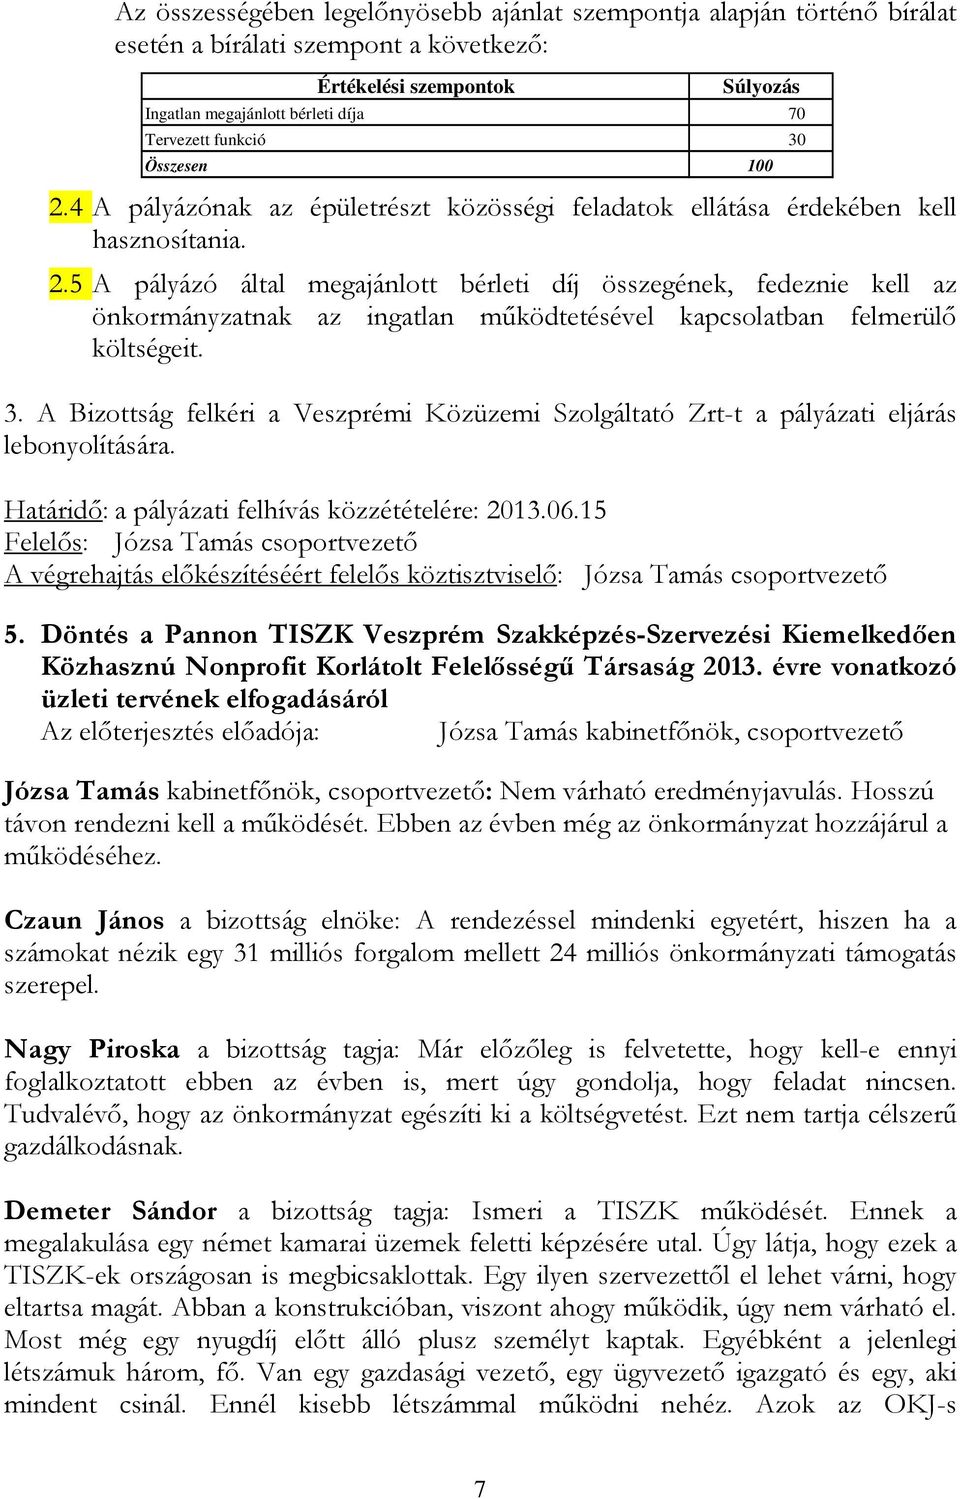 3. A Bizottság felkéri a Veszprémi Közüzemi Szolgáltató Zrt-t a pályázati eljárás lebonyolítására. Határidı: a pályázati felhívás közzétételére: 2013.06.